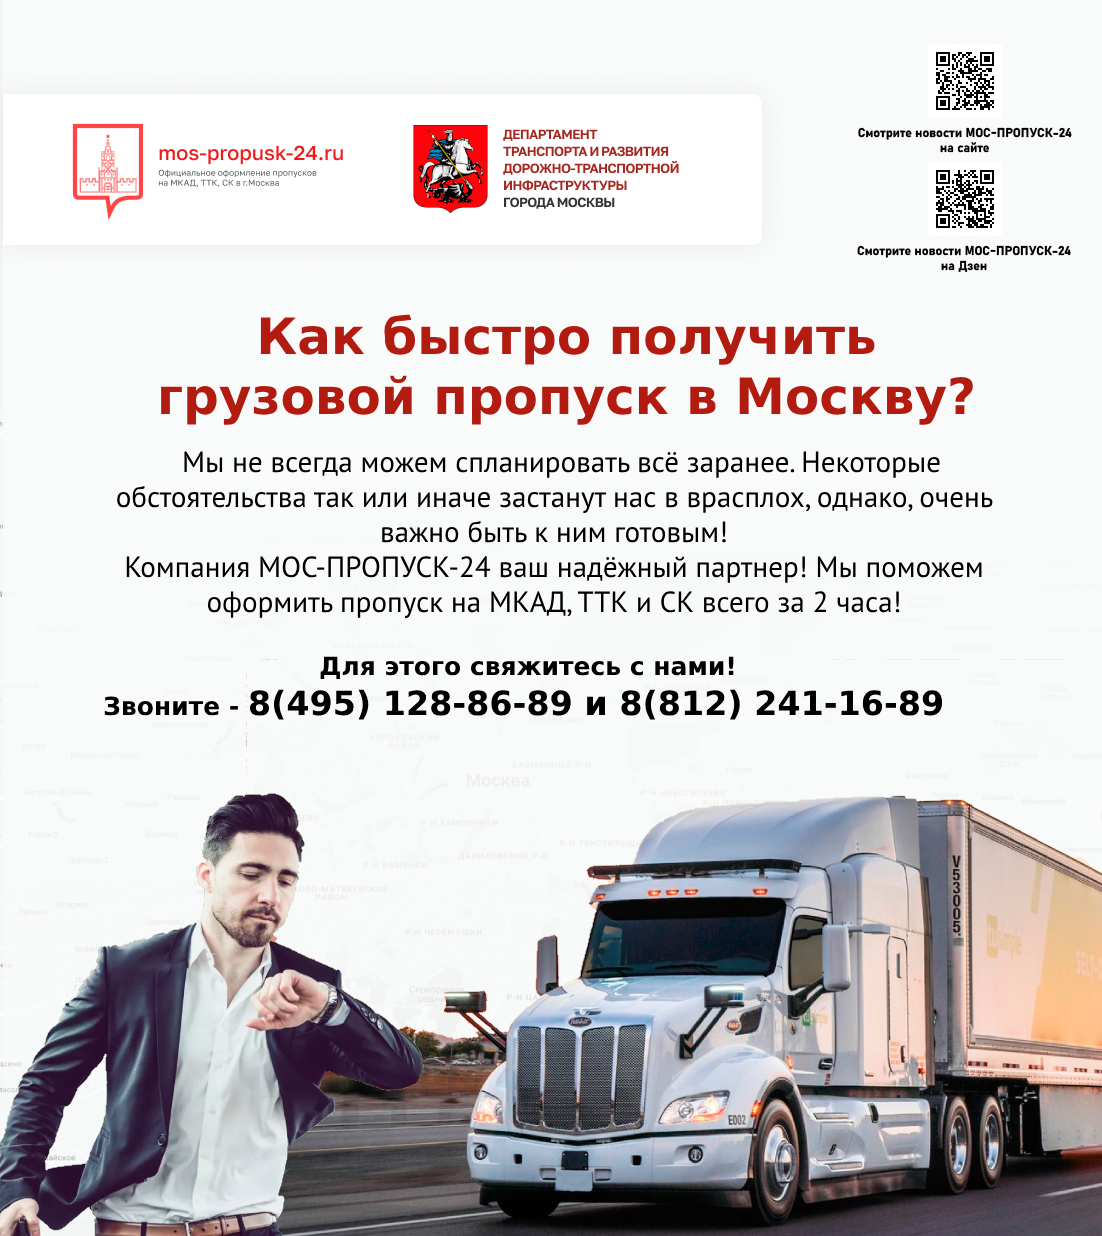 Как быстро получить грузовой пропуск в Москву?